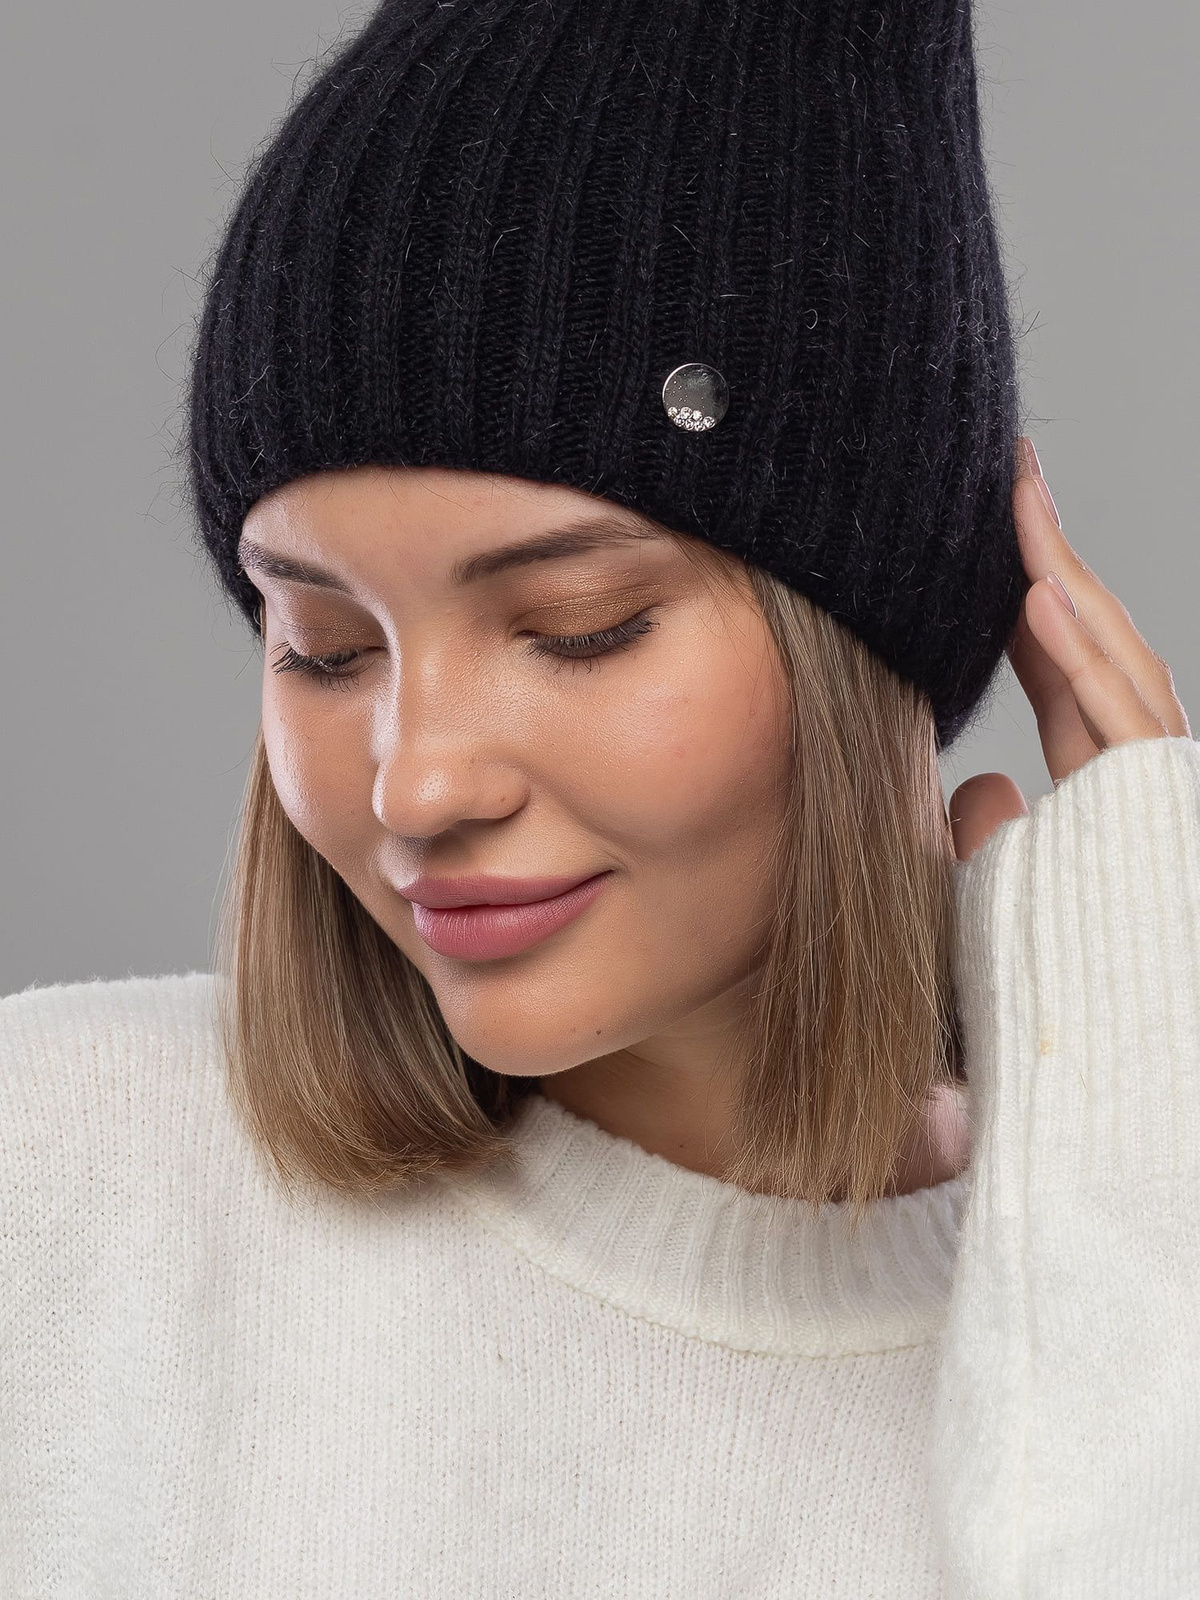 Теплая зимняя шапка из нежнейшей ангоры станет неотъемлемой частью вашего гардероба в холодное время года. Ее без отворотный дизайн делает ее идеальной для любого стиля и образа, добавляя утонченности вашему внешнему виду.